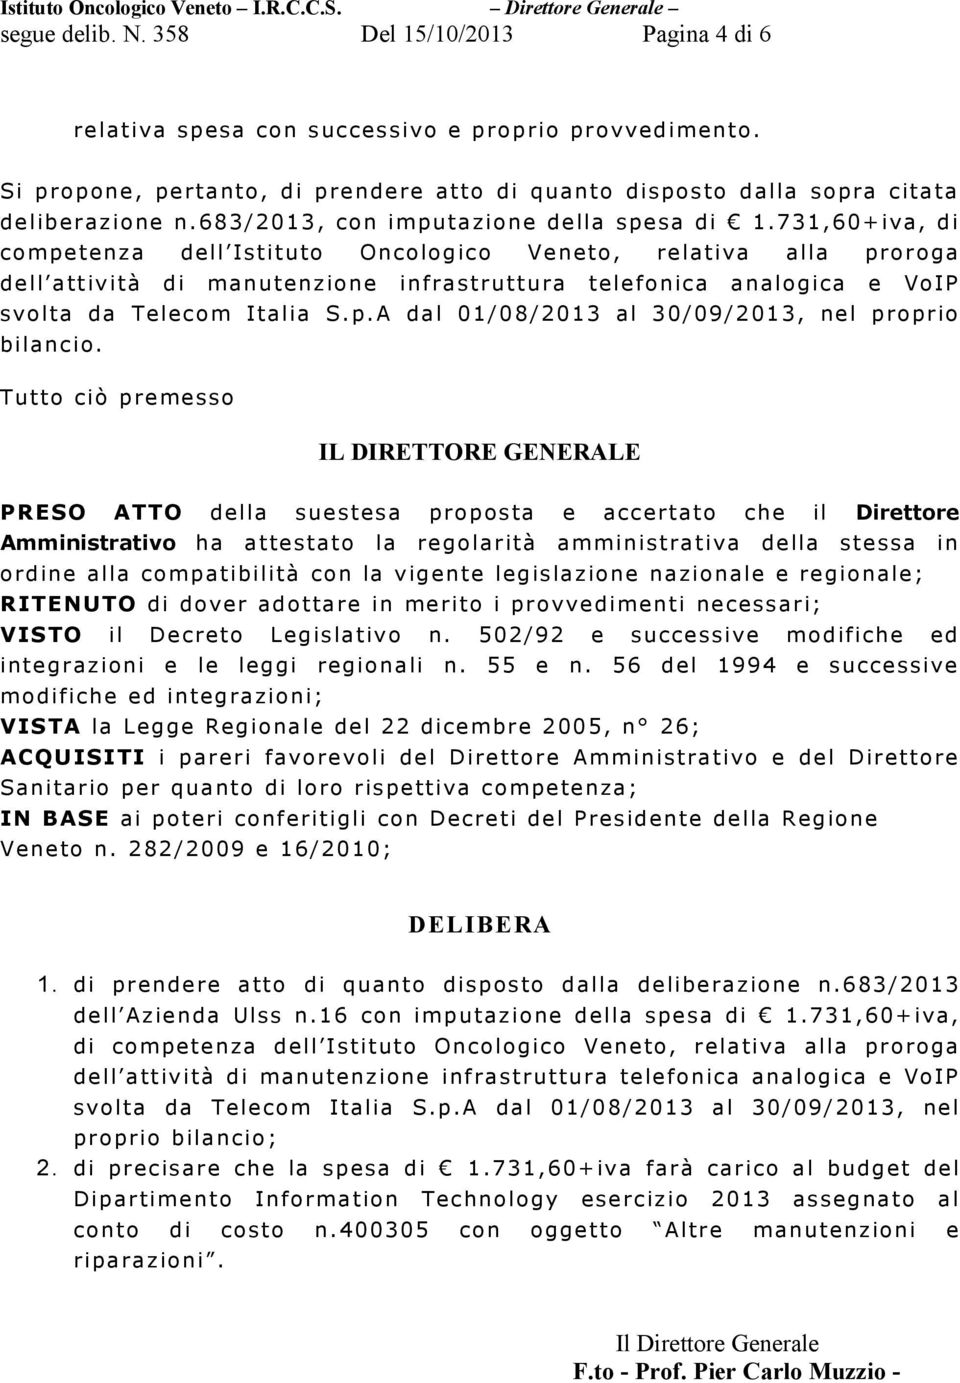 731,60+iva, di competenza dell Istituto Oncologico Veneto, relativa alla proroga dell attività di manutenzione infrastruttura telefonica analogica e VoIP svolta da Telecom Italia S.p.A dal 01/08/2013 al 30/09/2013, nel proprio bilancio.